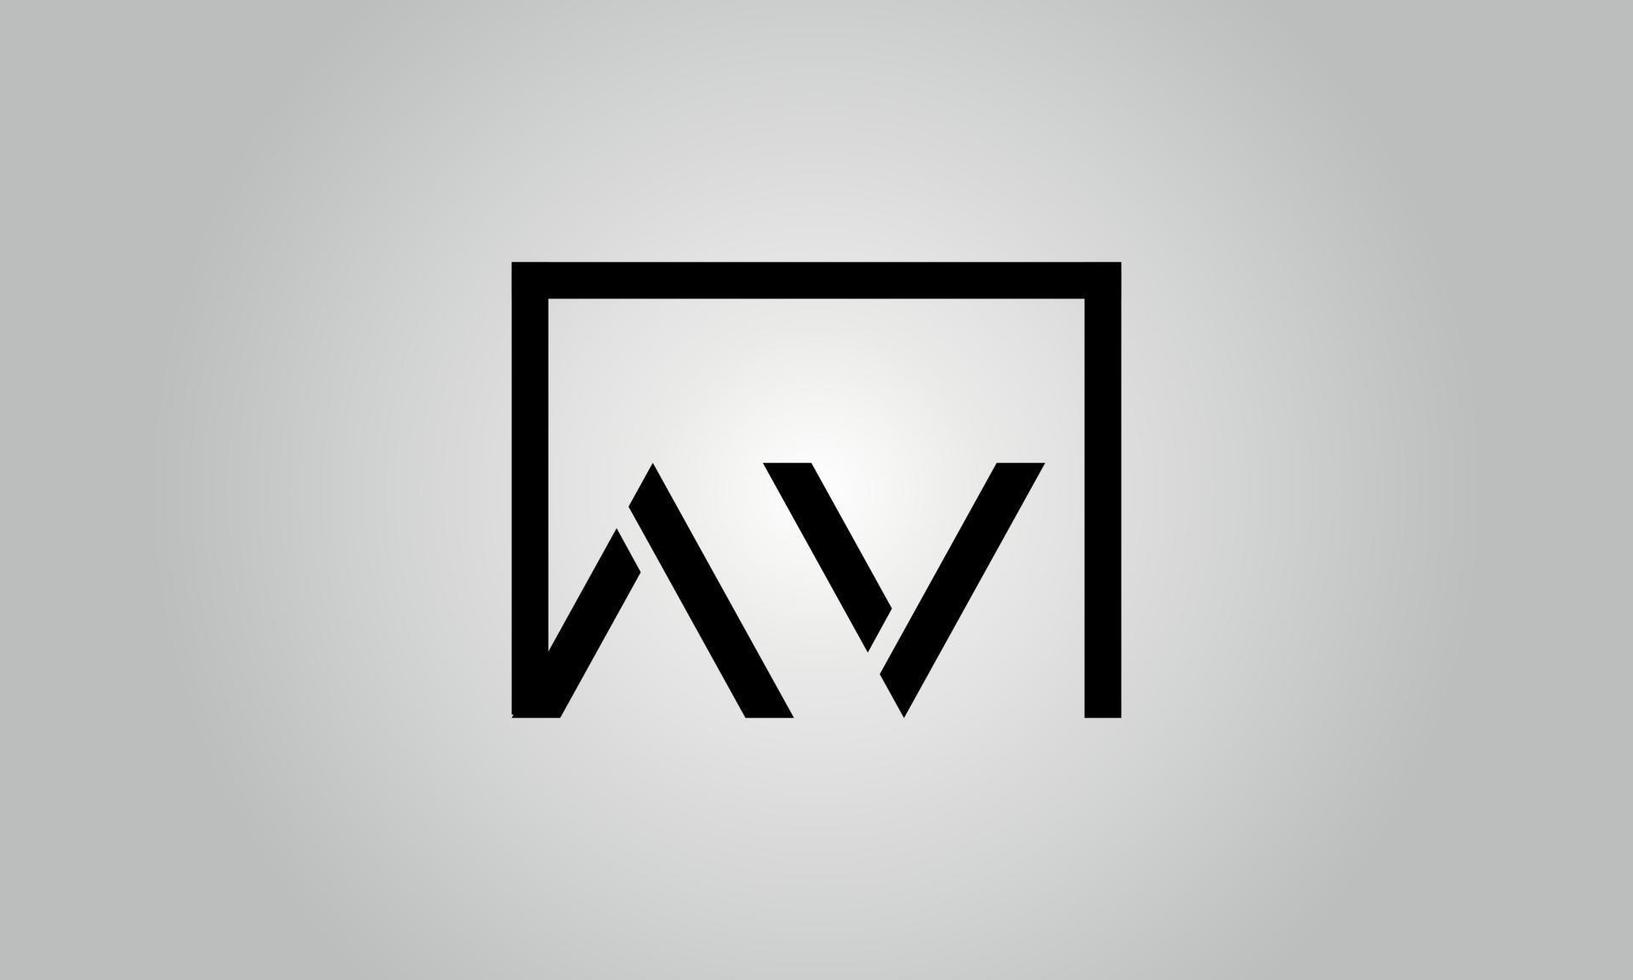 design de logotipo de letra av. logotipo av com forma quadrada em cores pretas modelo de vetor livre.